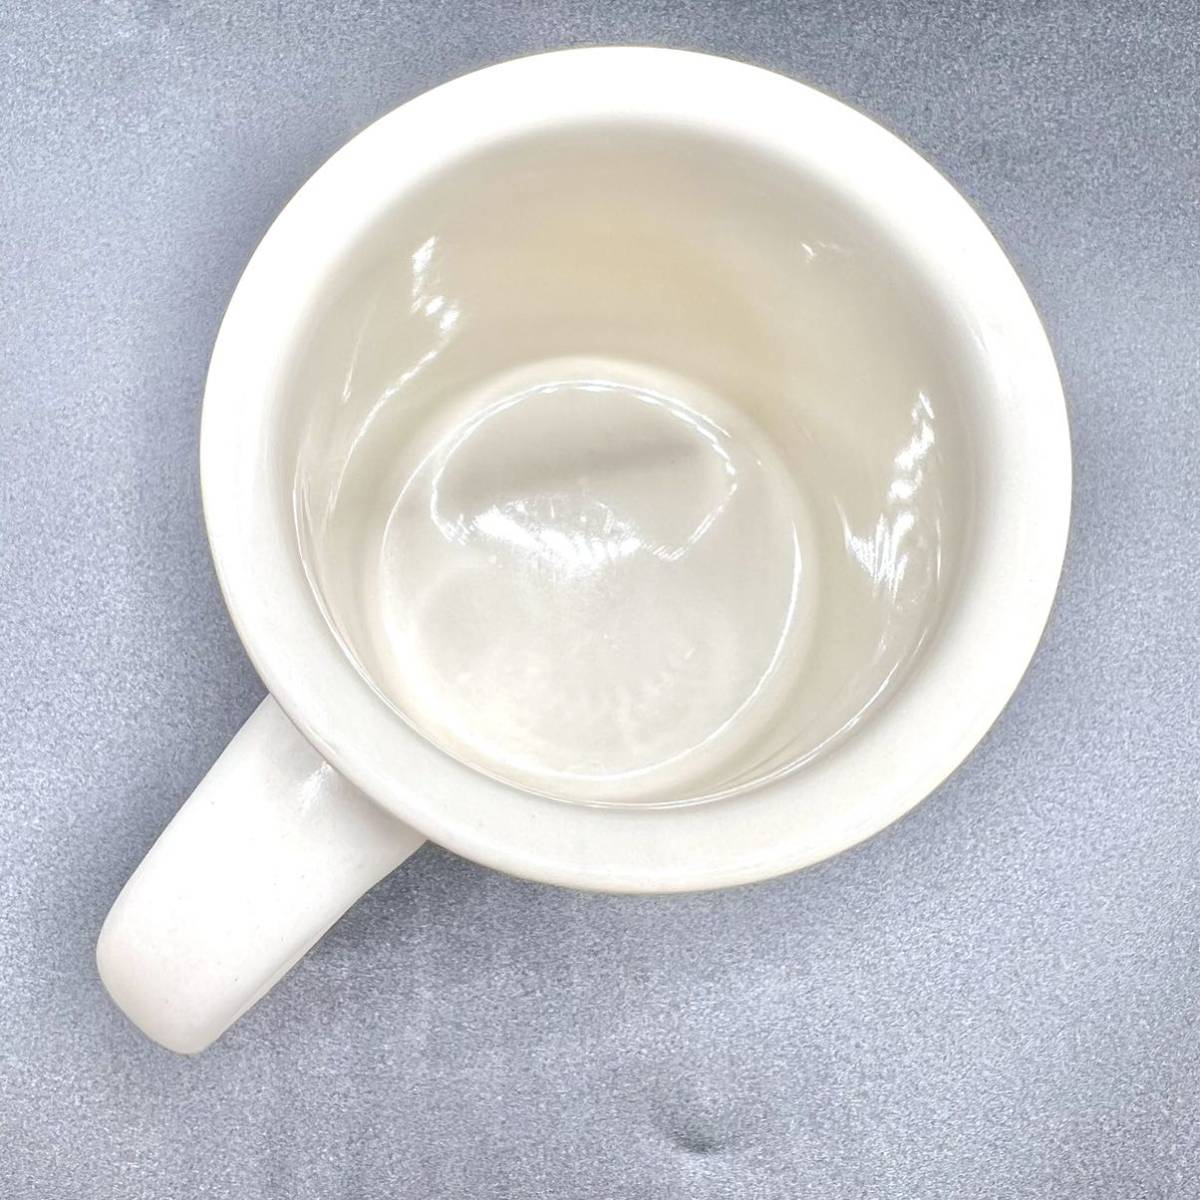 DEAN & DELUCA ディーアンドデルーカ マグカップ 陶器 食器 コーヒー マグ カフェ 人気 ブランドホワイト 珈琲 コップ カップ_画像4